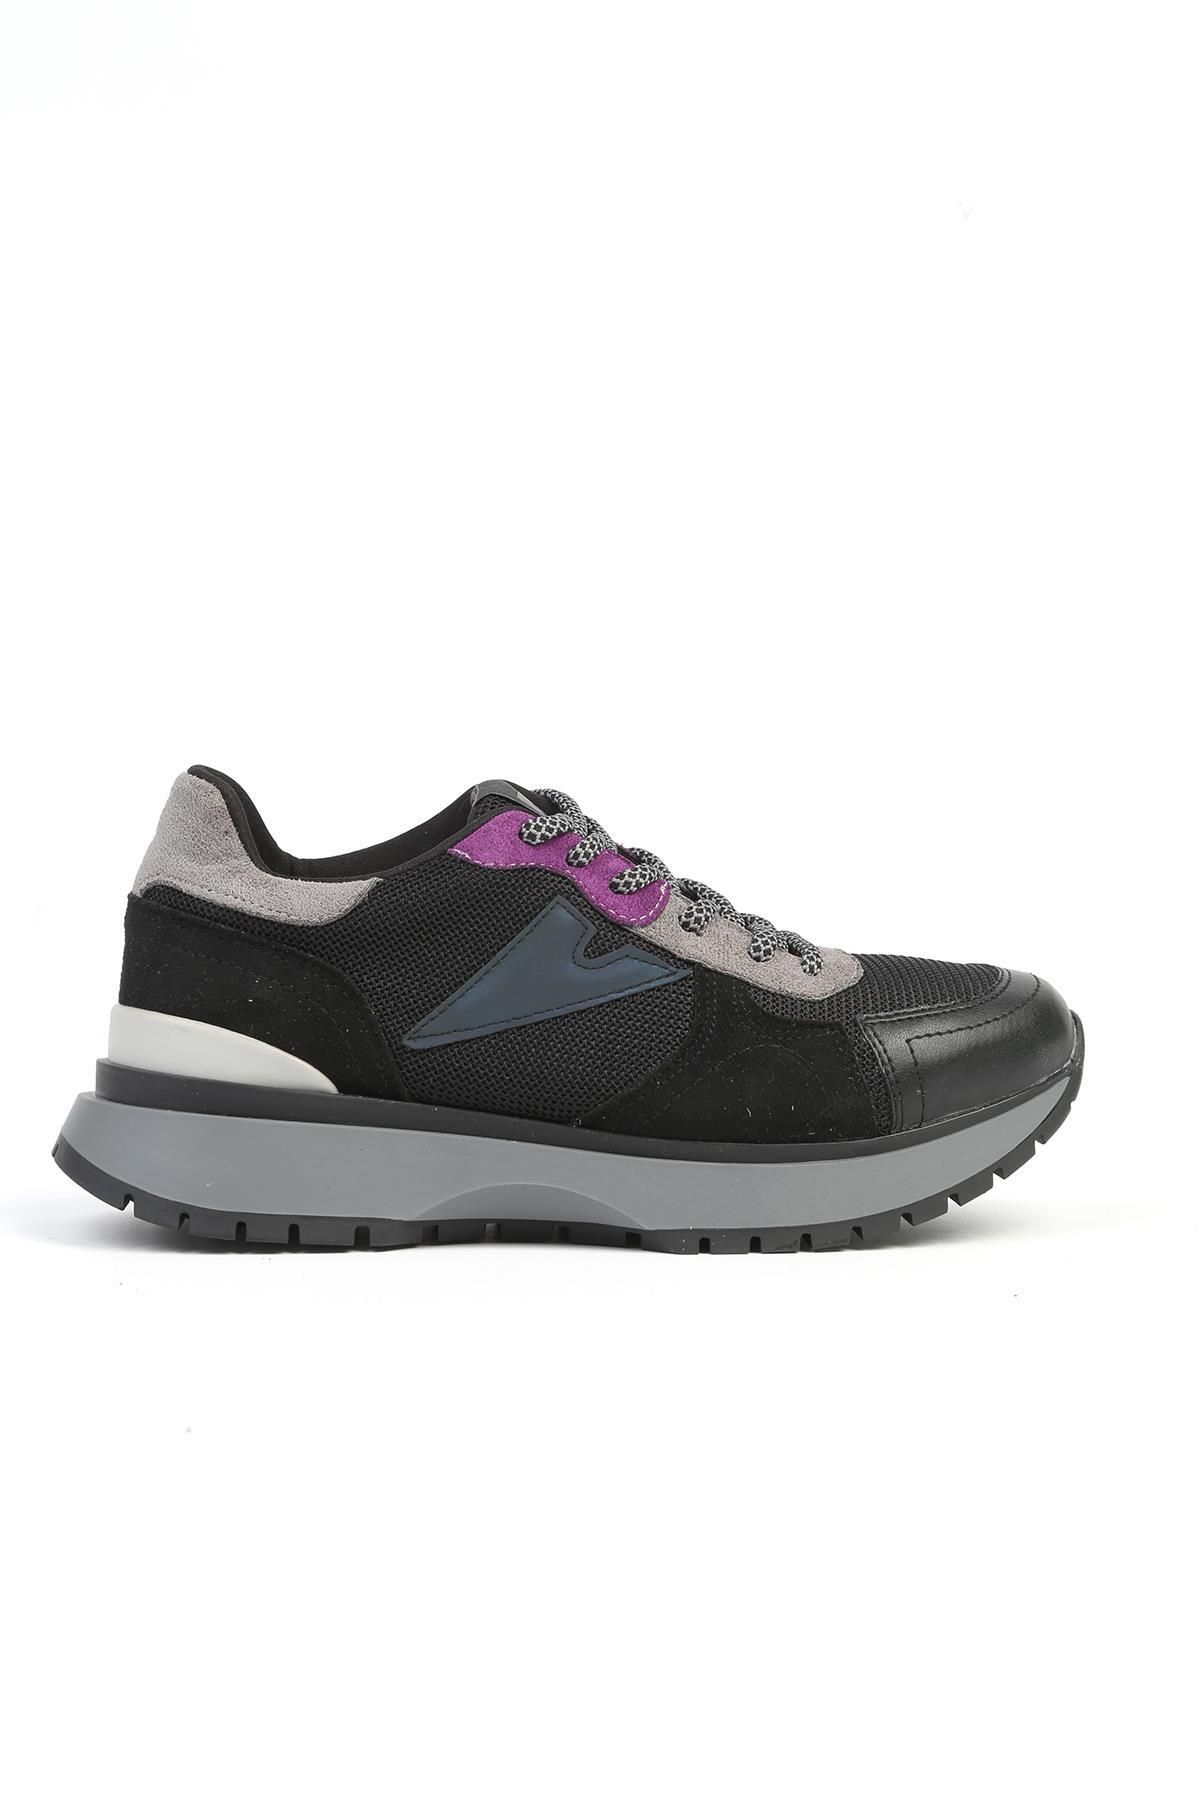 Pierre Cardin ® | PC-52555 - 3959 Siyah - Kadın Sneaker